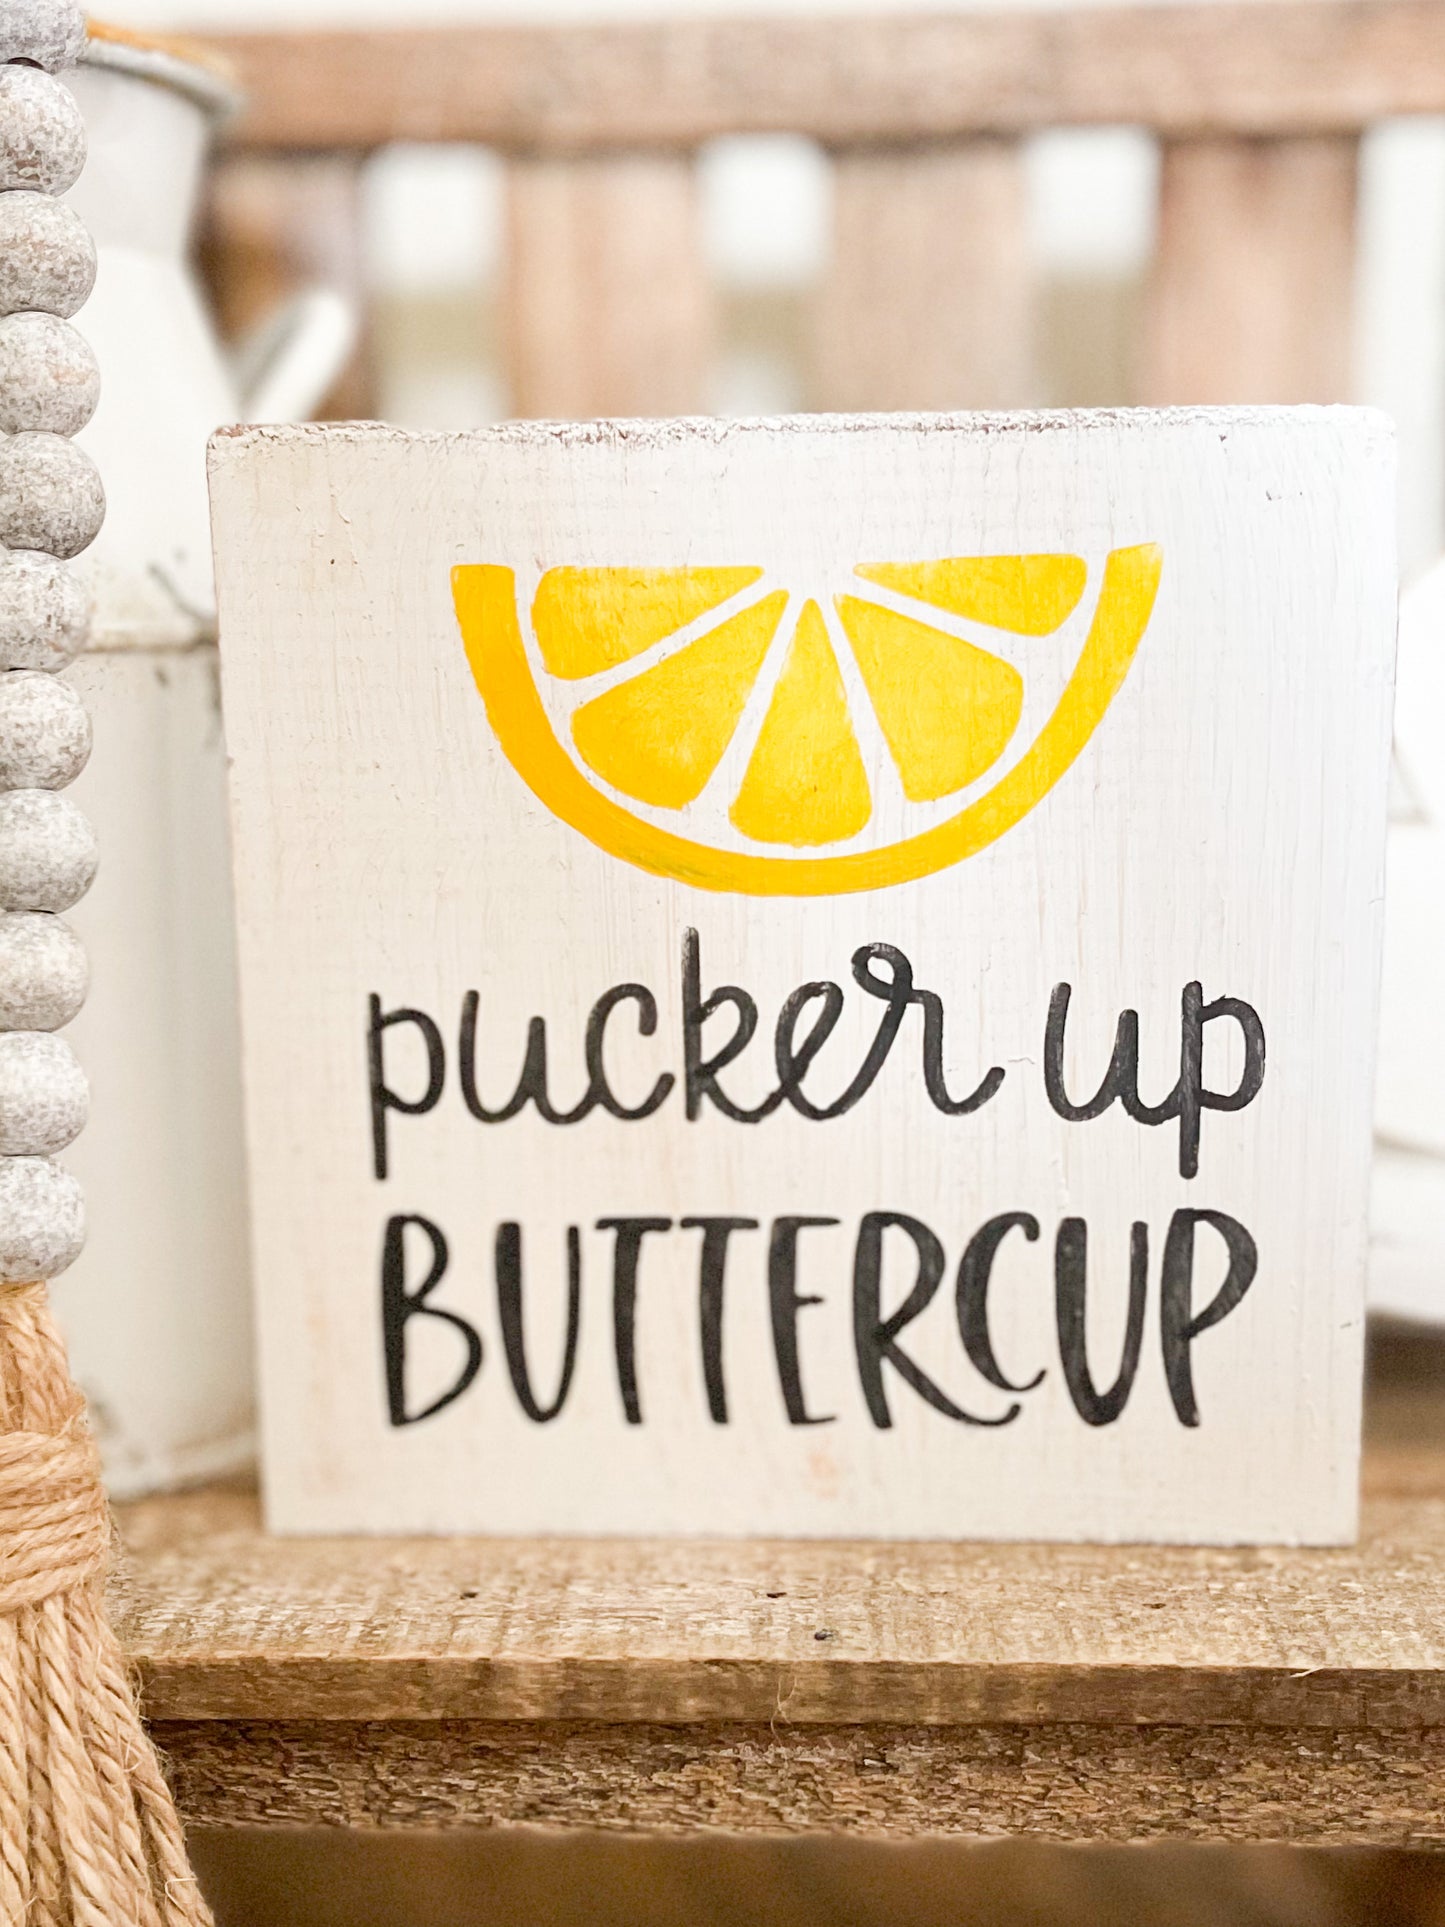 Pucker Up Buttercup sign